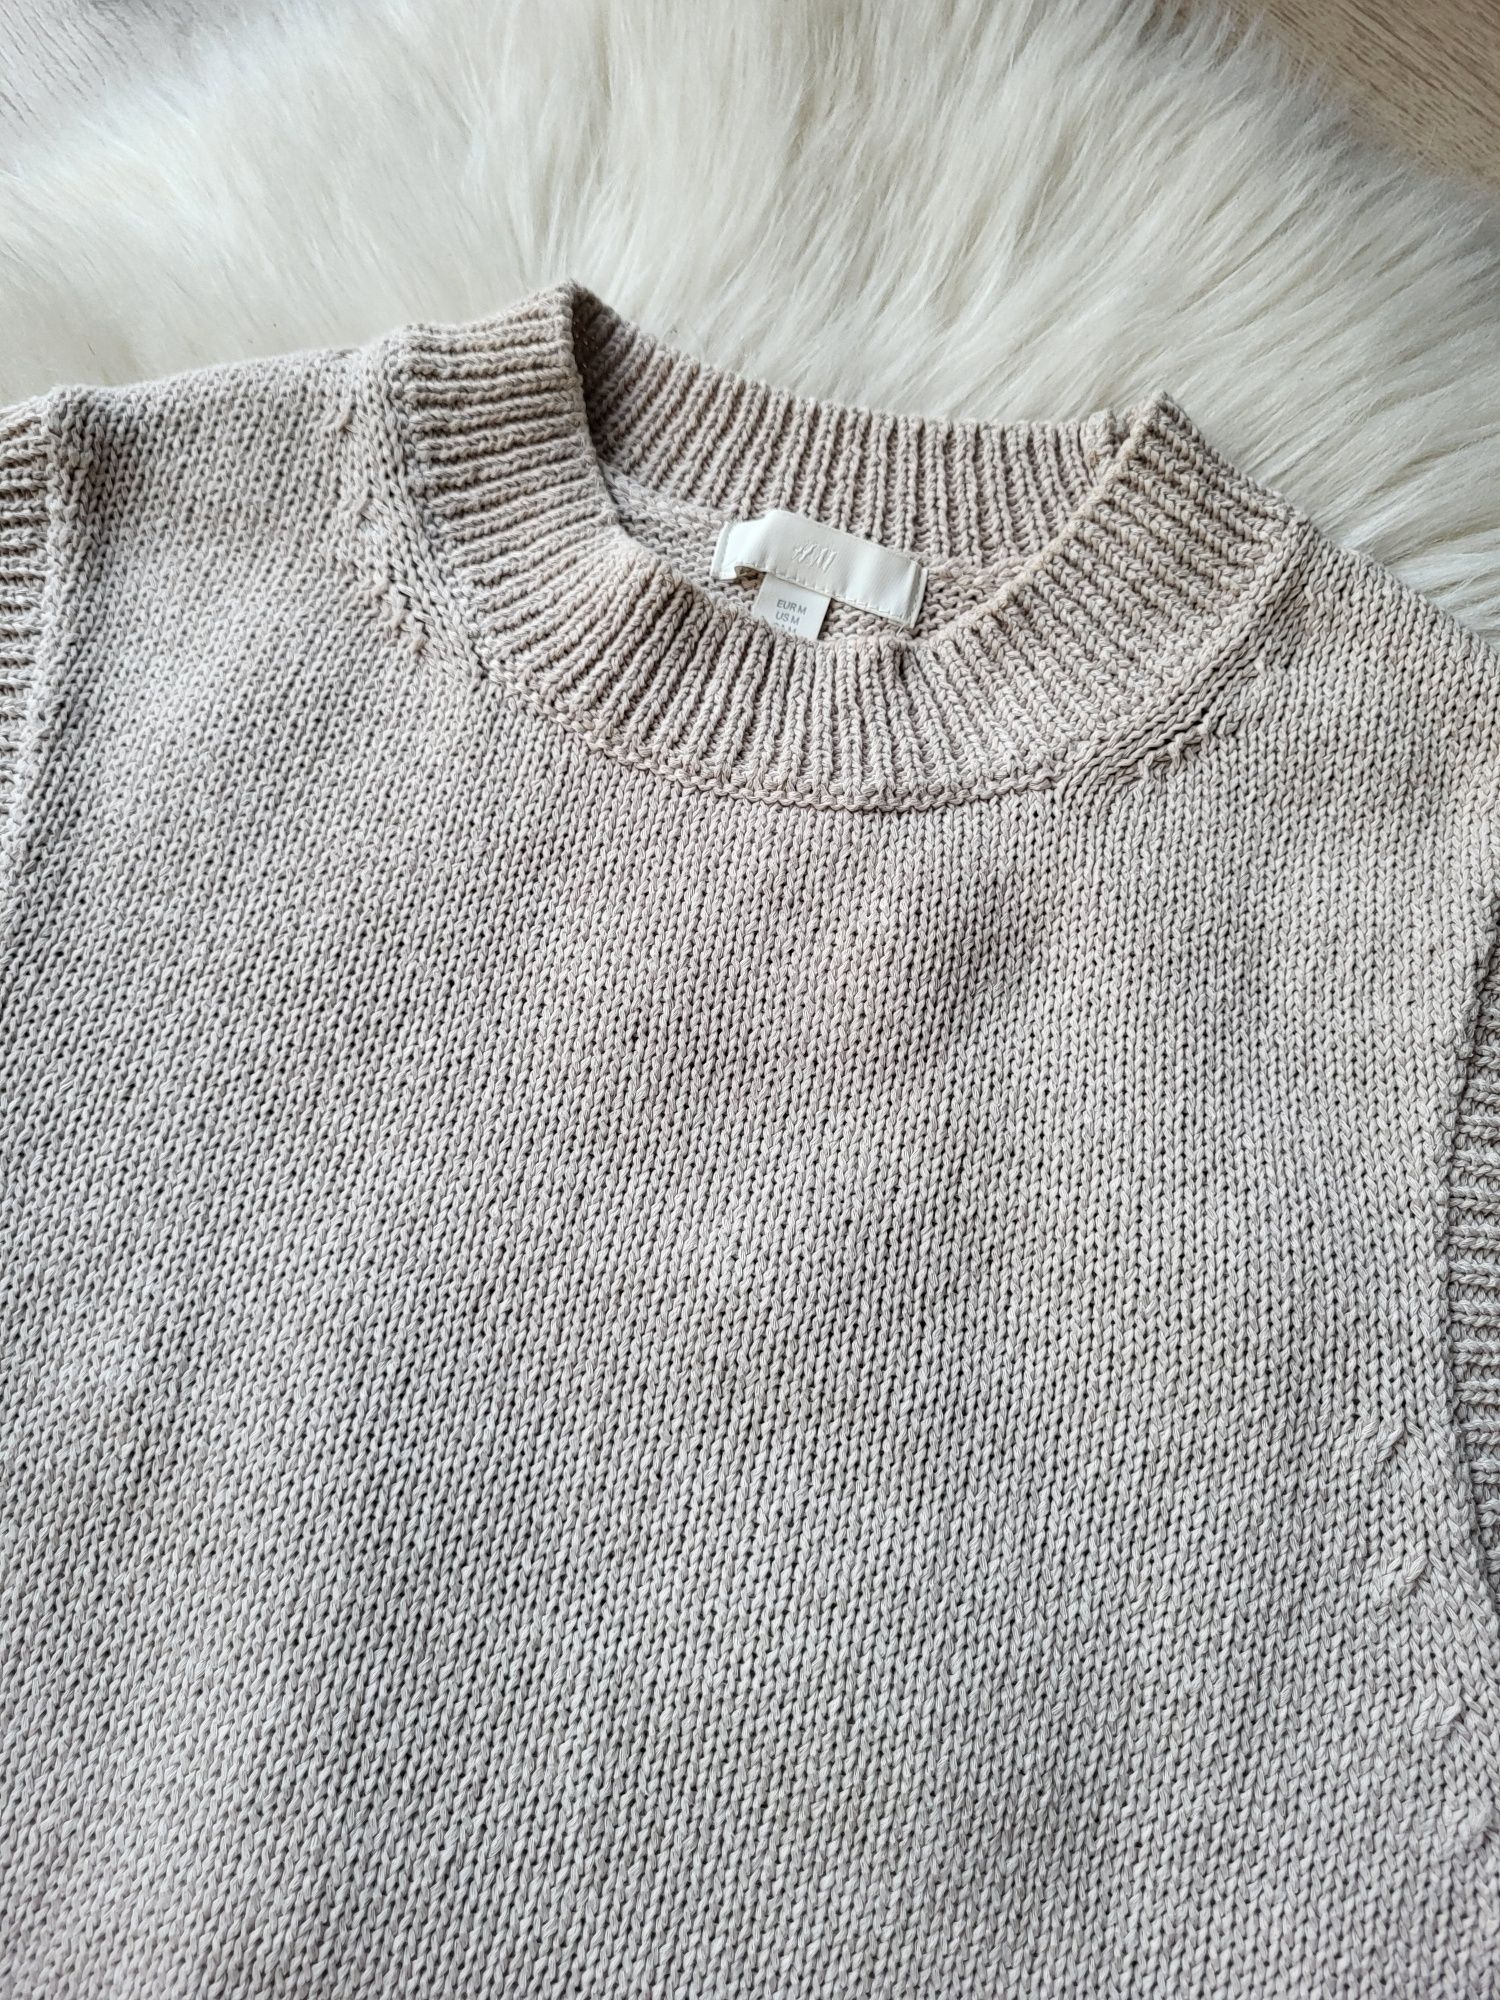 Beżowy sweter bezrękawnik capsule wardrobe H&M rozmiar M